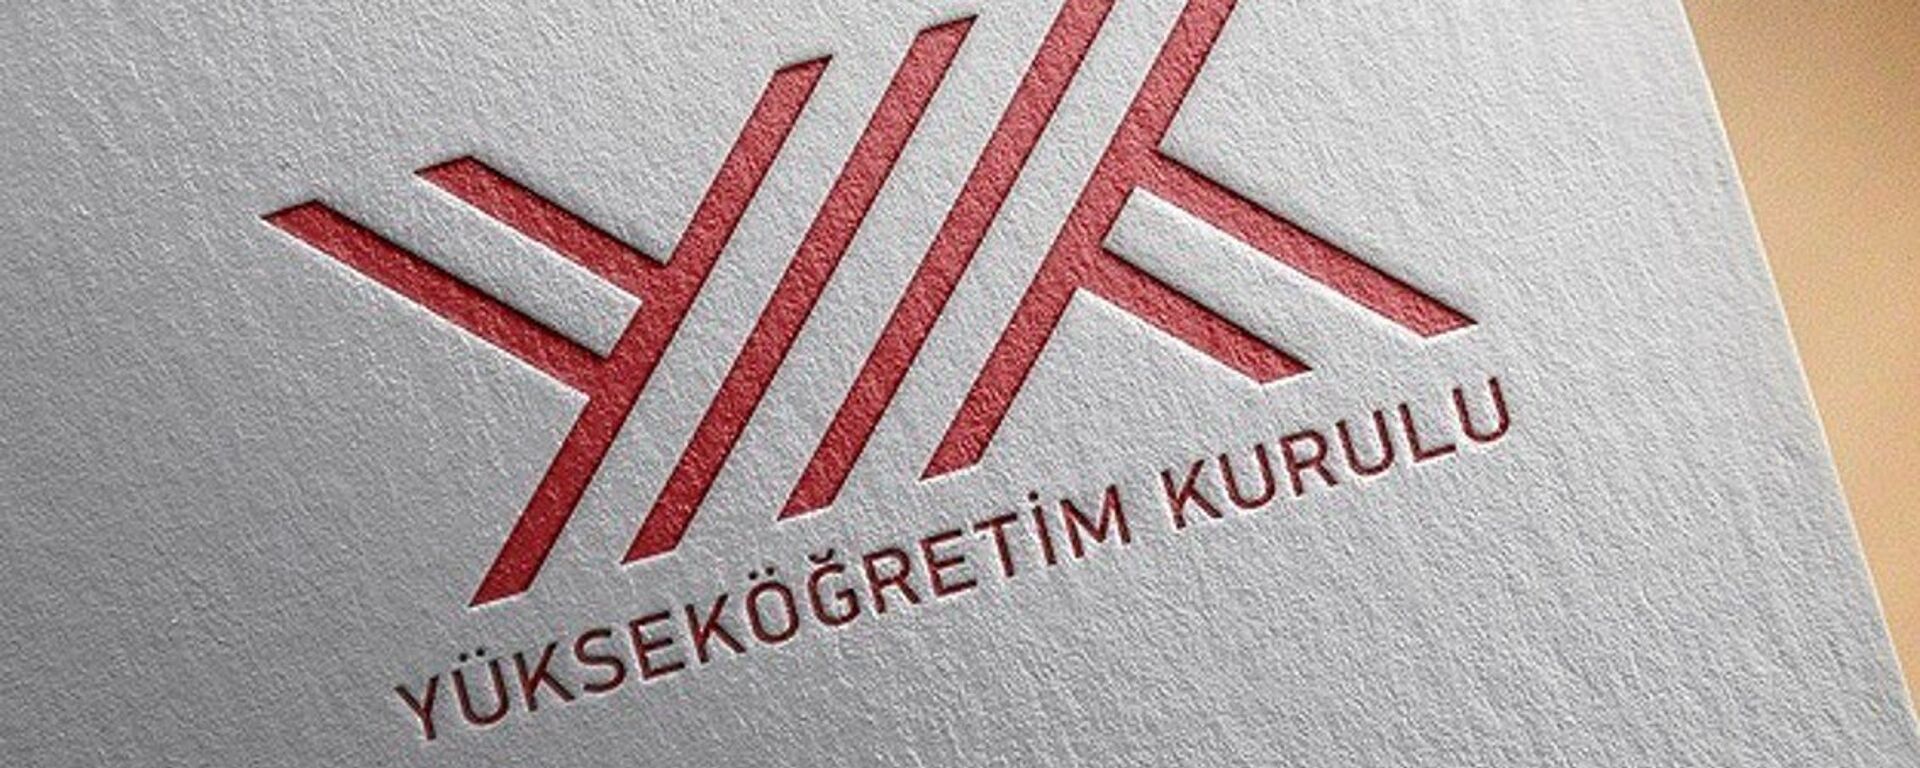 YÖK - Sputnik Türkiye, 1920, 04.07.2019